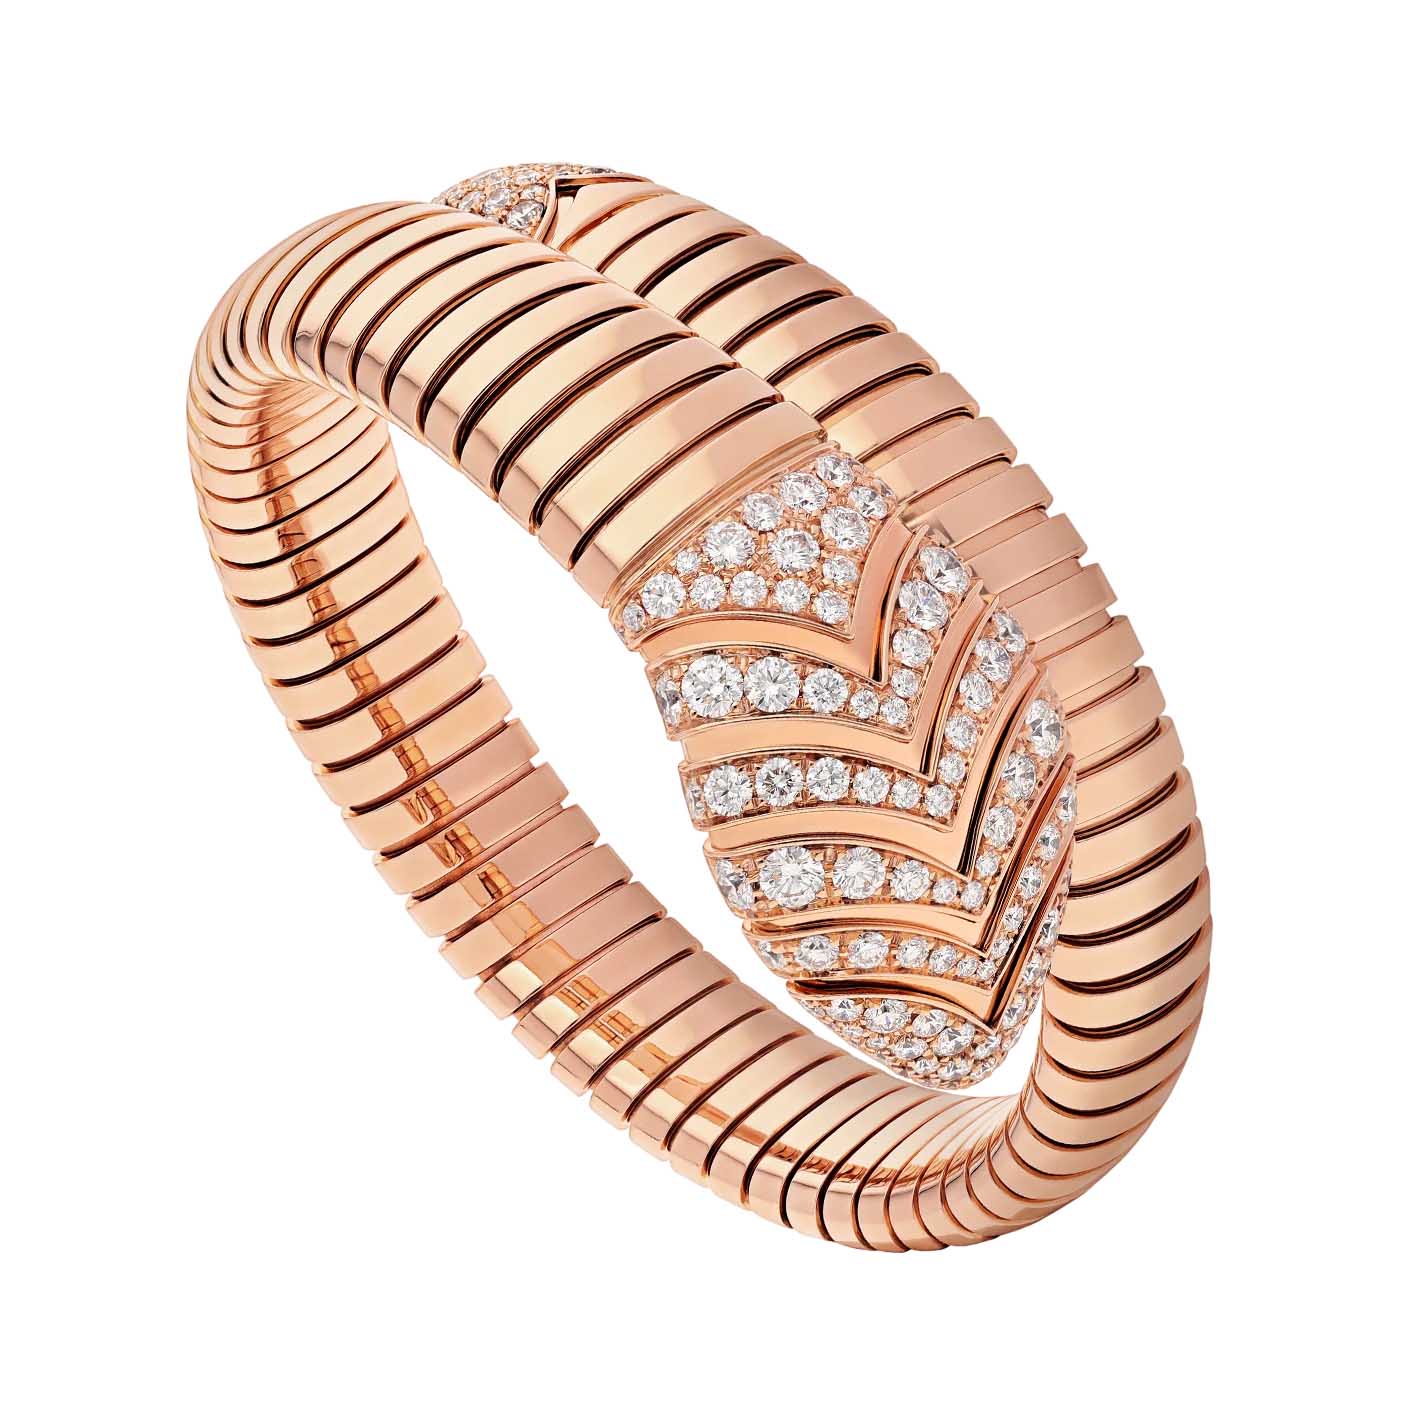 Joyería OEM/ODM al por mayor hecha de pulsera de una sola espiral en plata de ley chapada en oro rosa de 18 kt.